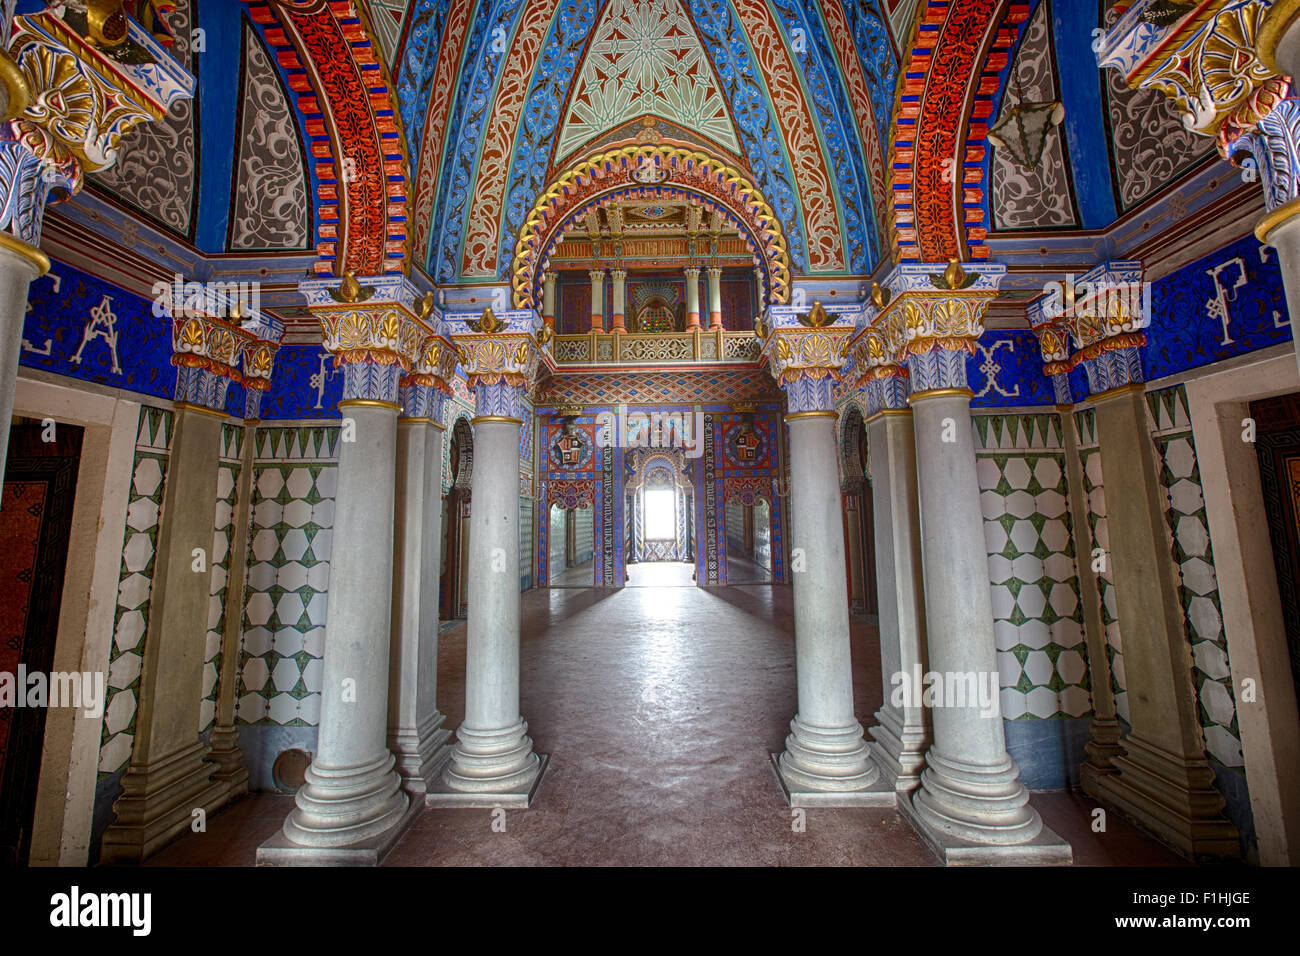 Palacio de estilo morisco interior castillo de cuento de hadas, de 1001 NOCHES Foto de stock